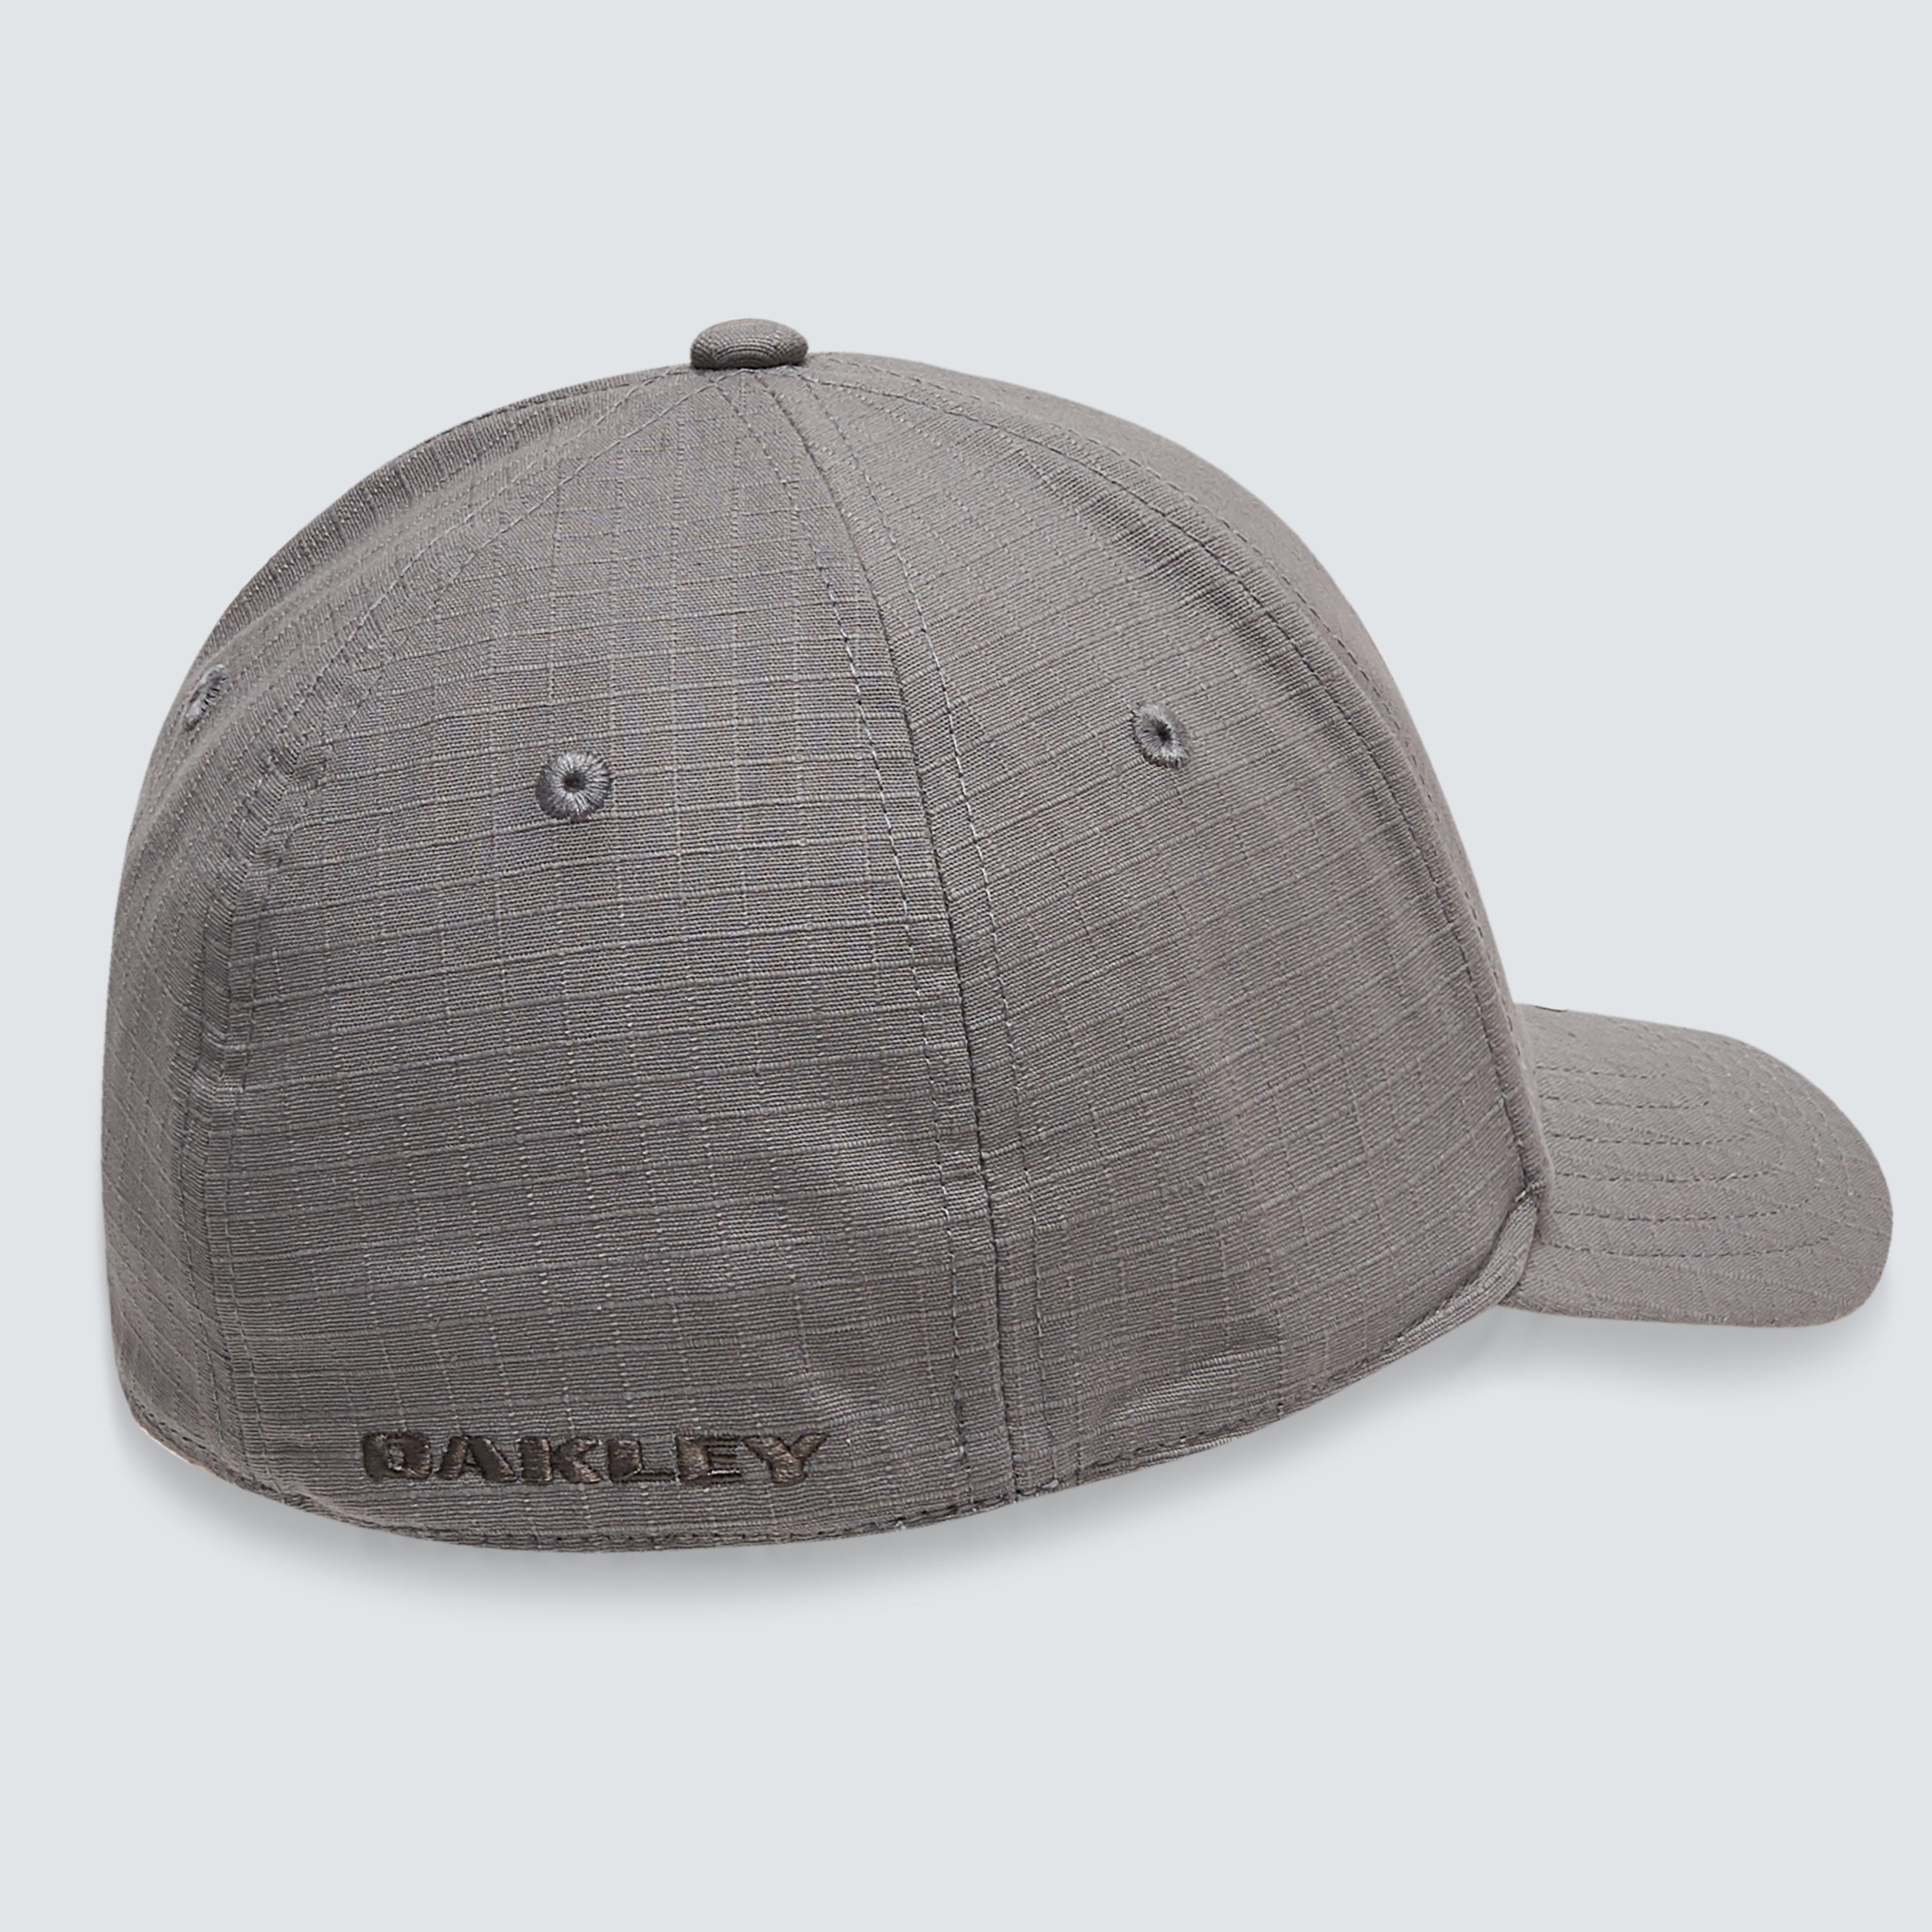 Oakley Ellipse 6 Panel Hat - Stone Gray | Oakley US Store